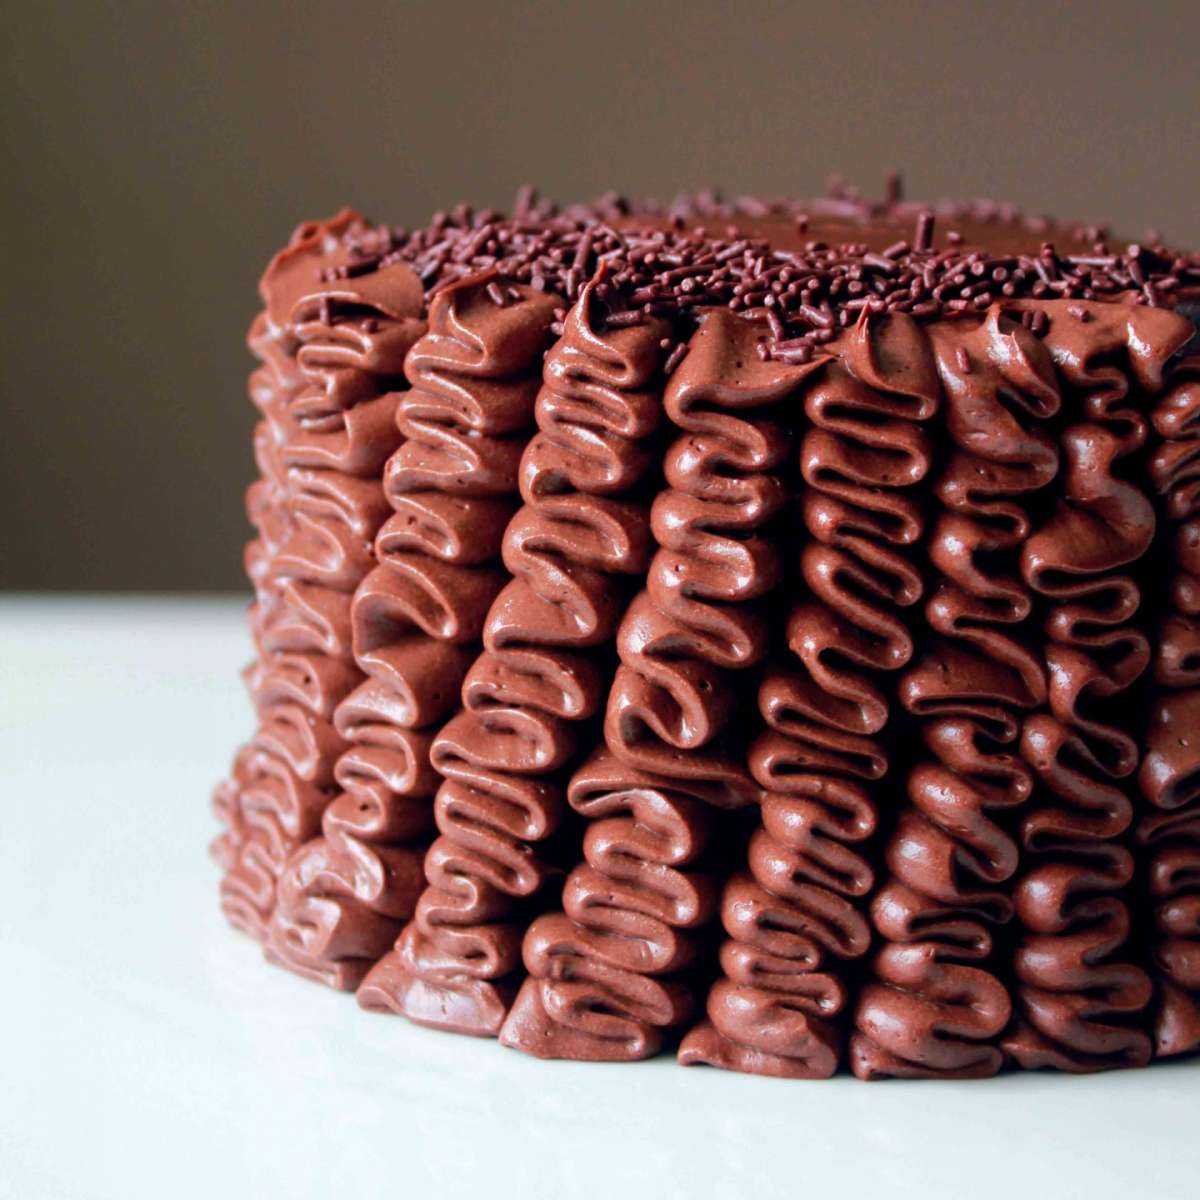 Ruffle cake al doppio cioccolato